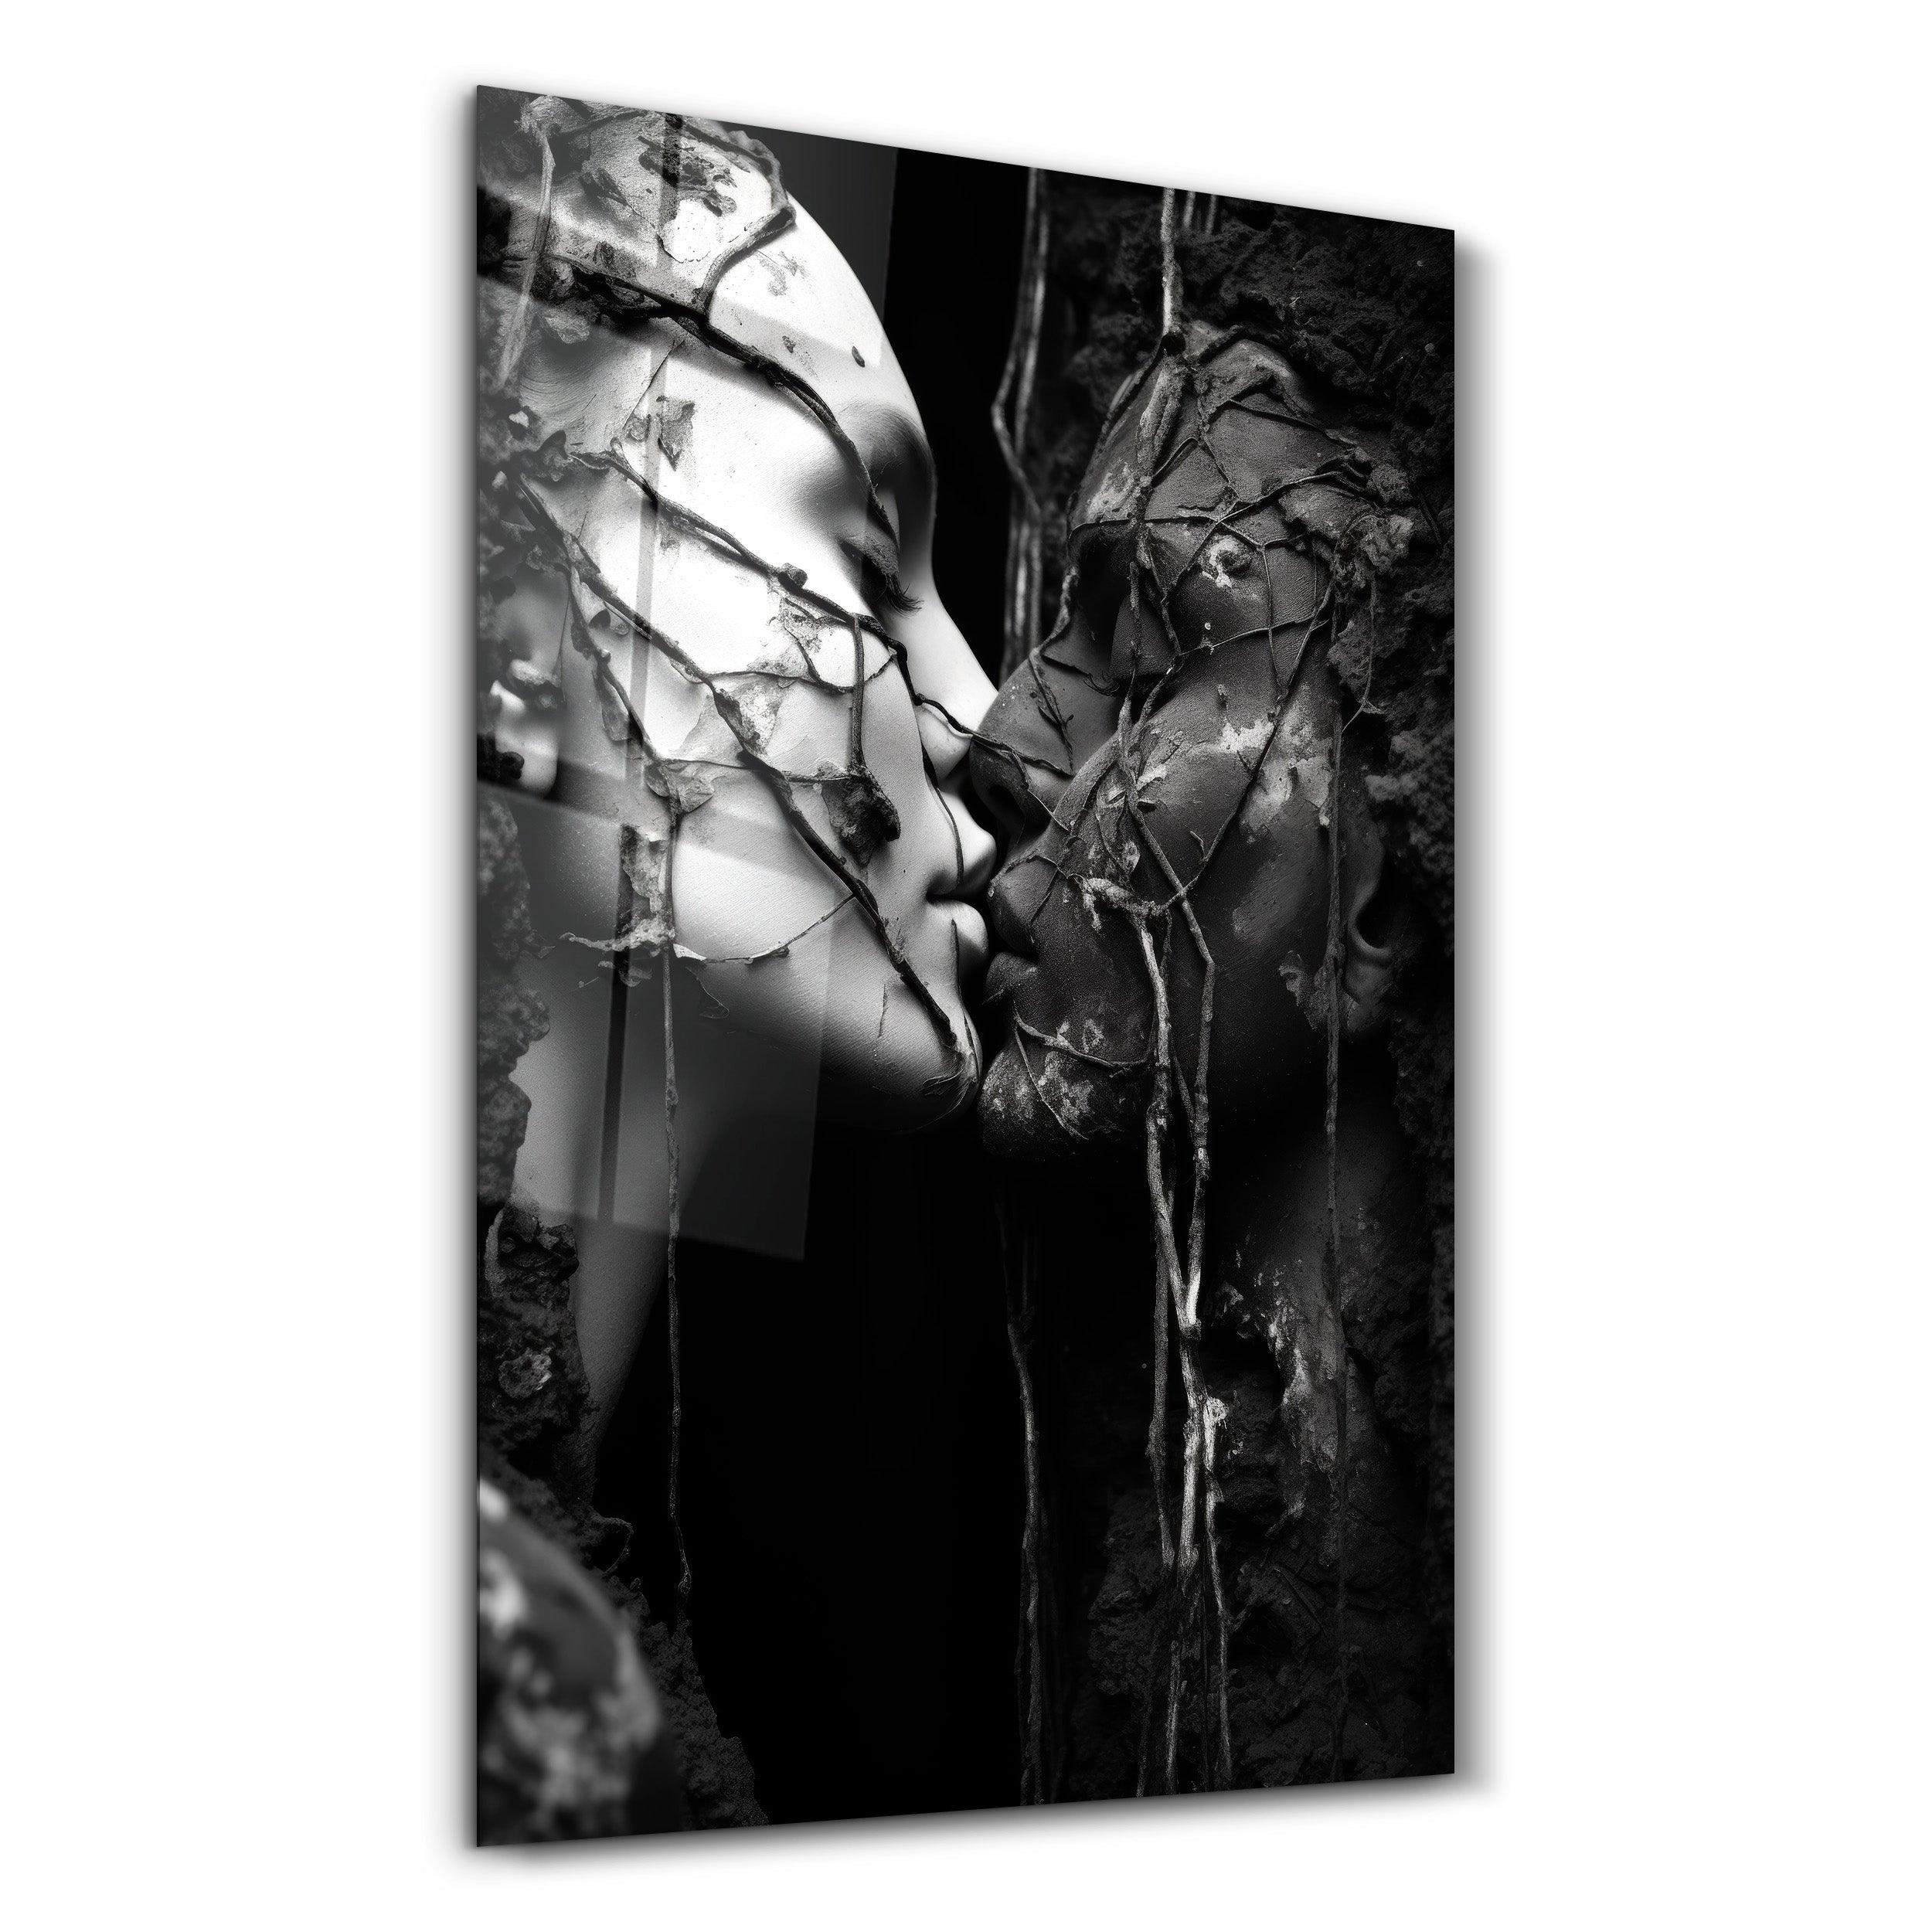 Kiss Me - Designers Collection Glass Wall Art - ArtDesigna Glass Printing Wall Art